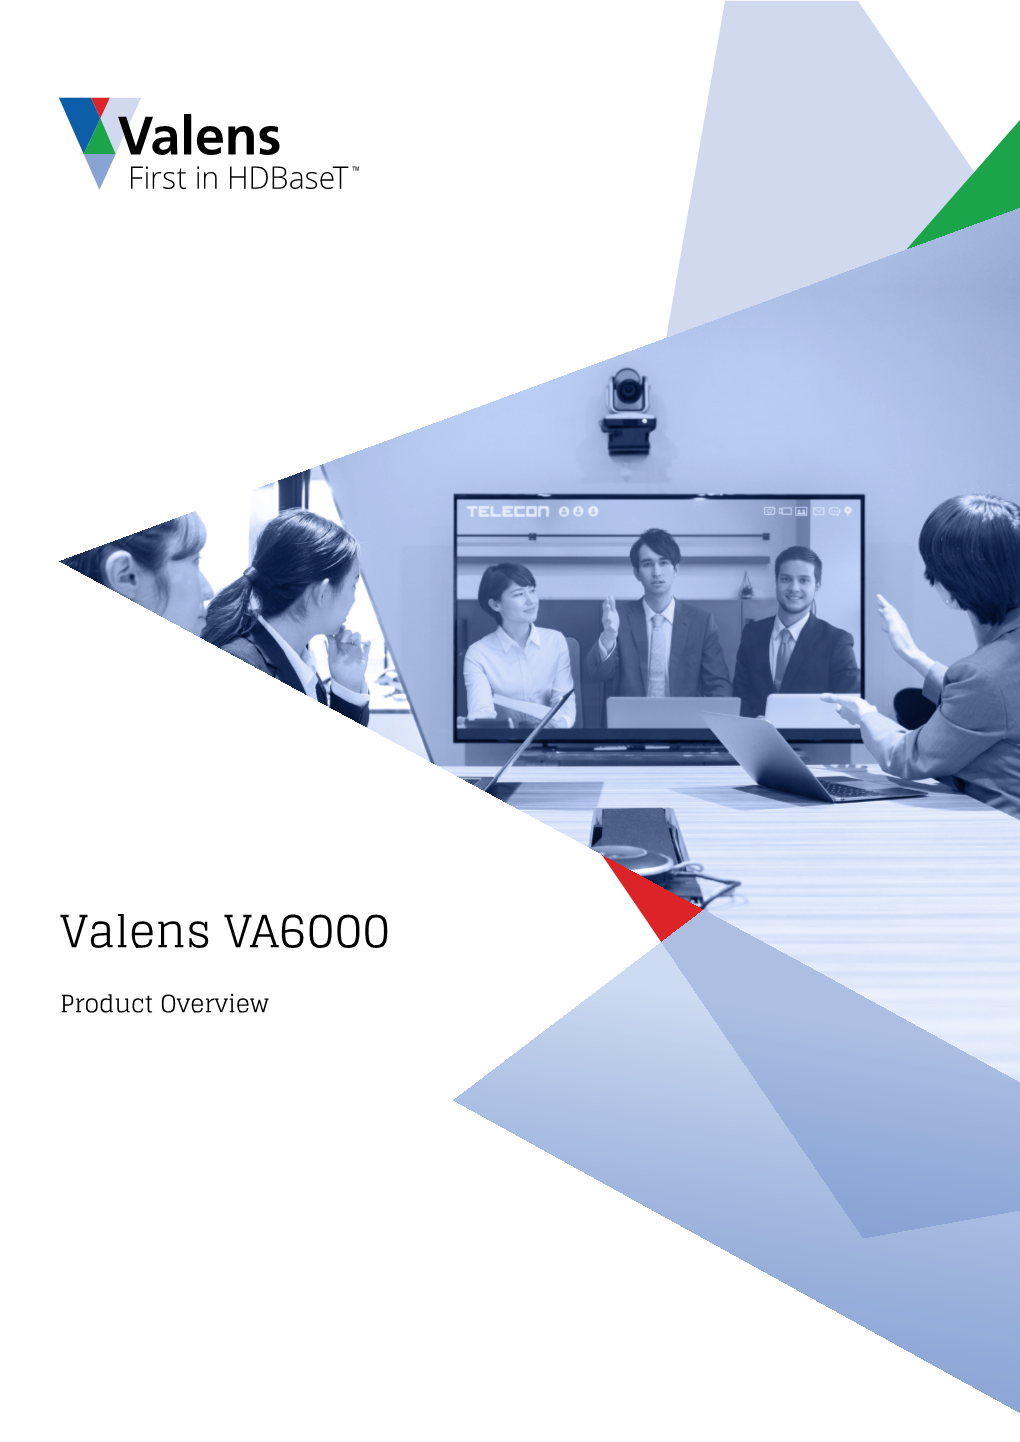 Valens VA6000